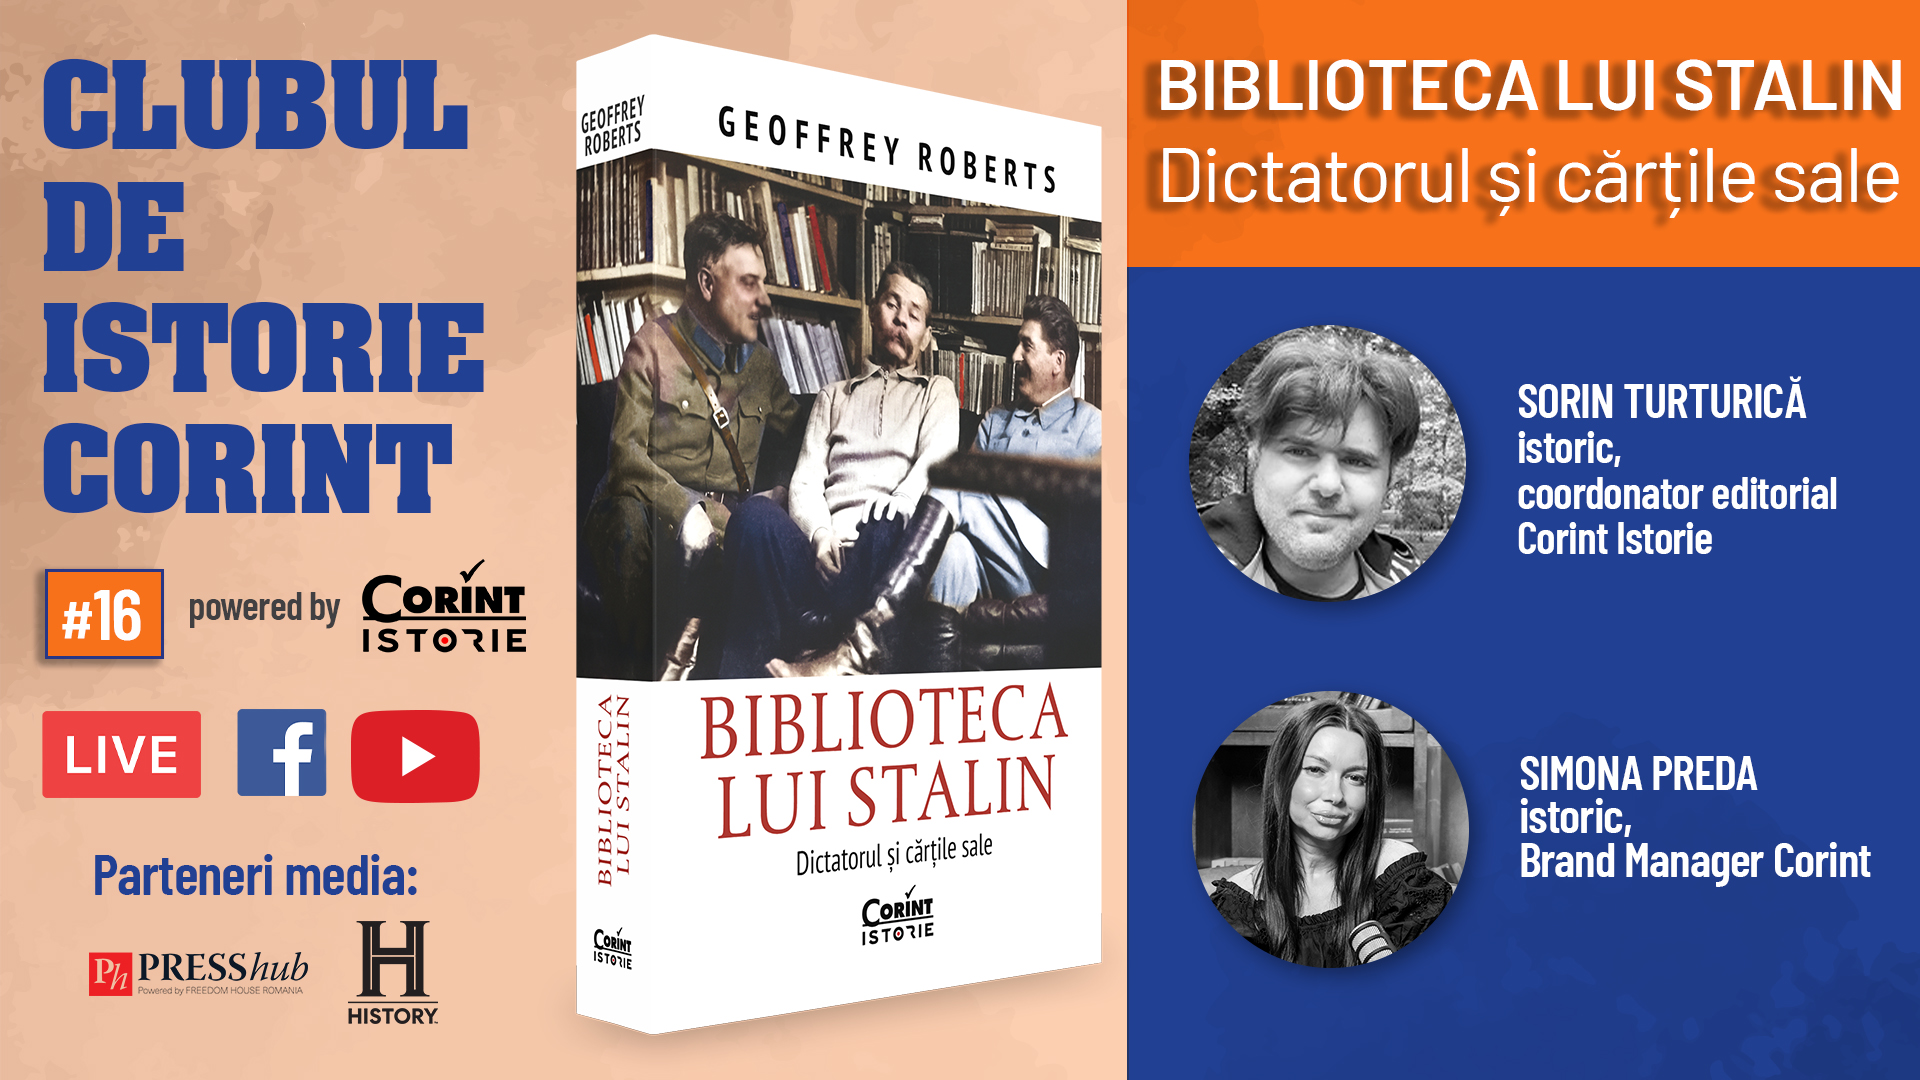 Clubul de istorie Corint #16: Biblioteca lui Stalin. Dictatorul și cărțile sale 